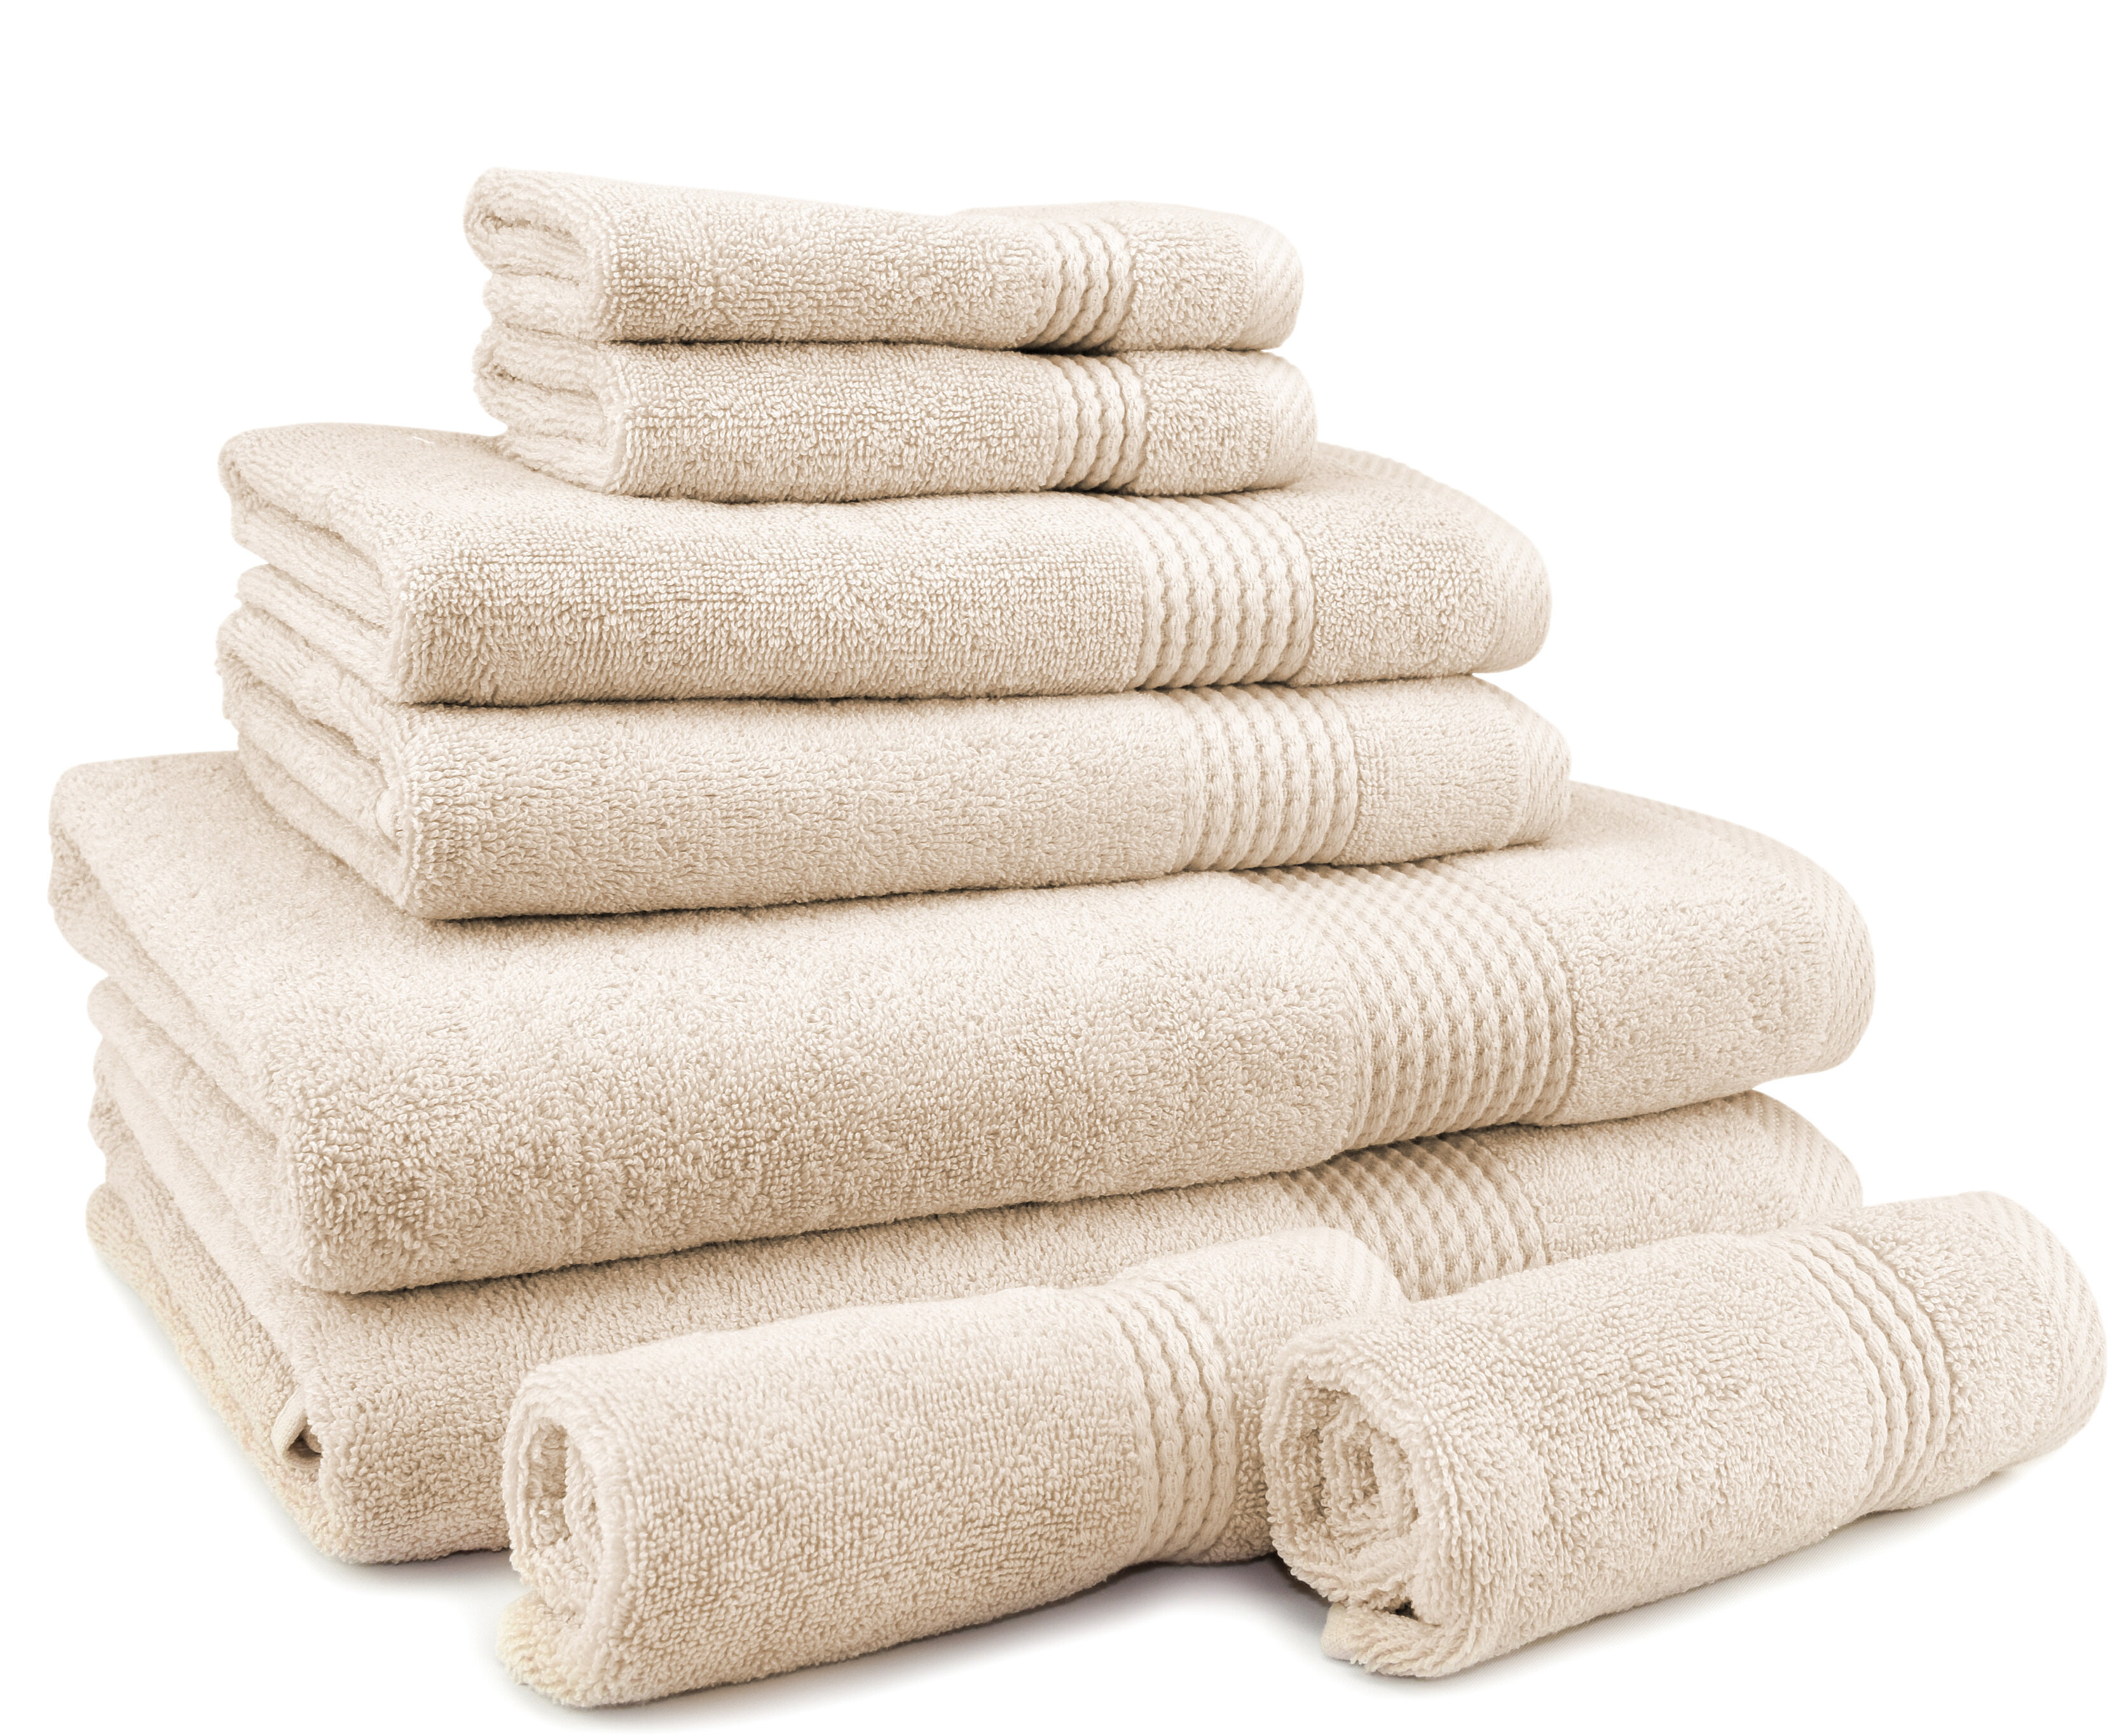 Bath Sheet & Bath Towel Set Plush Turkish Cotton Towels 8 pc Premium Quick Dry 